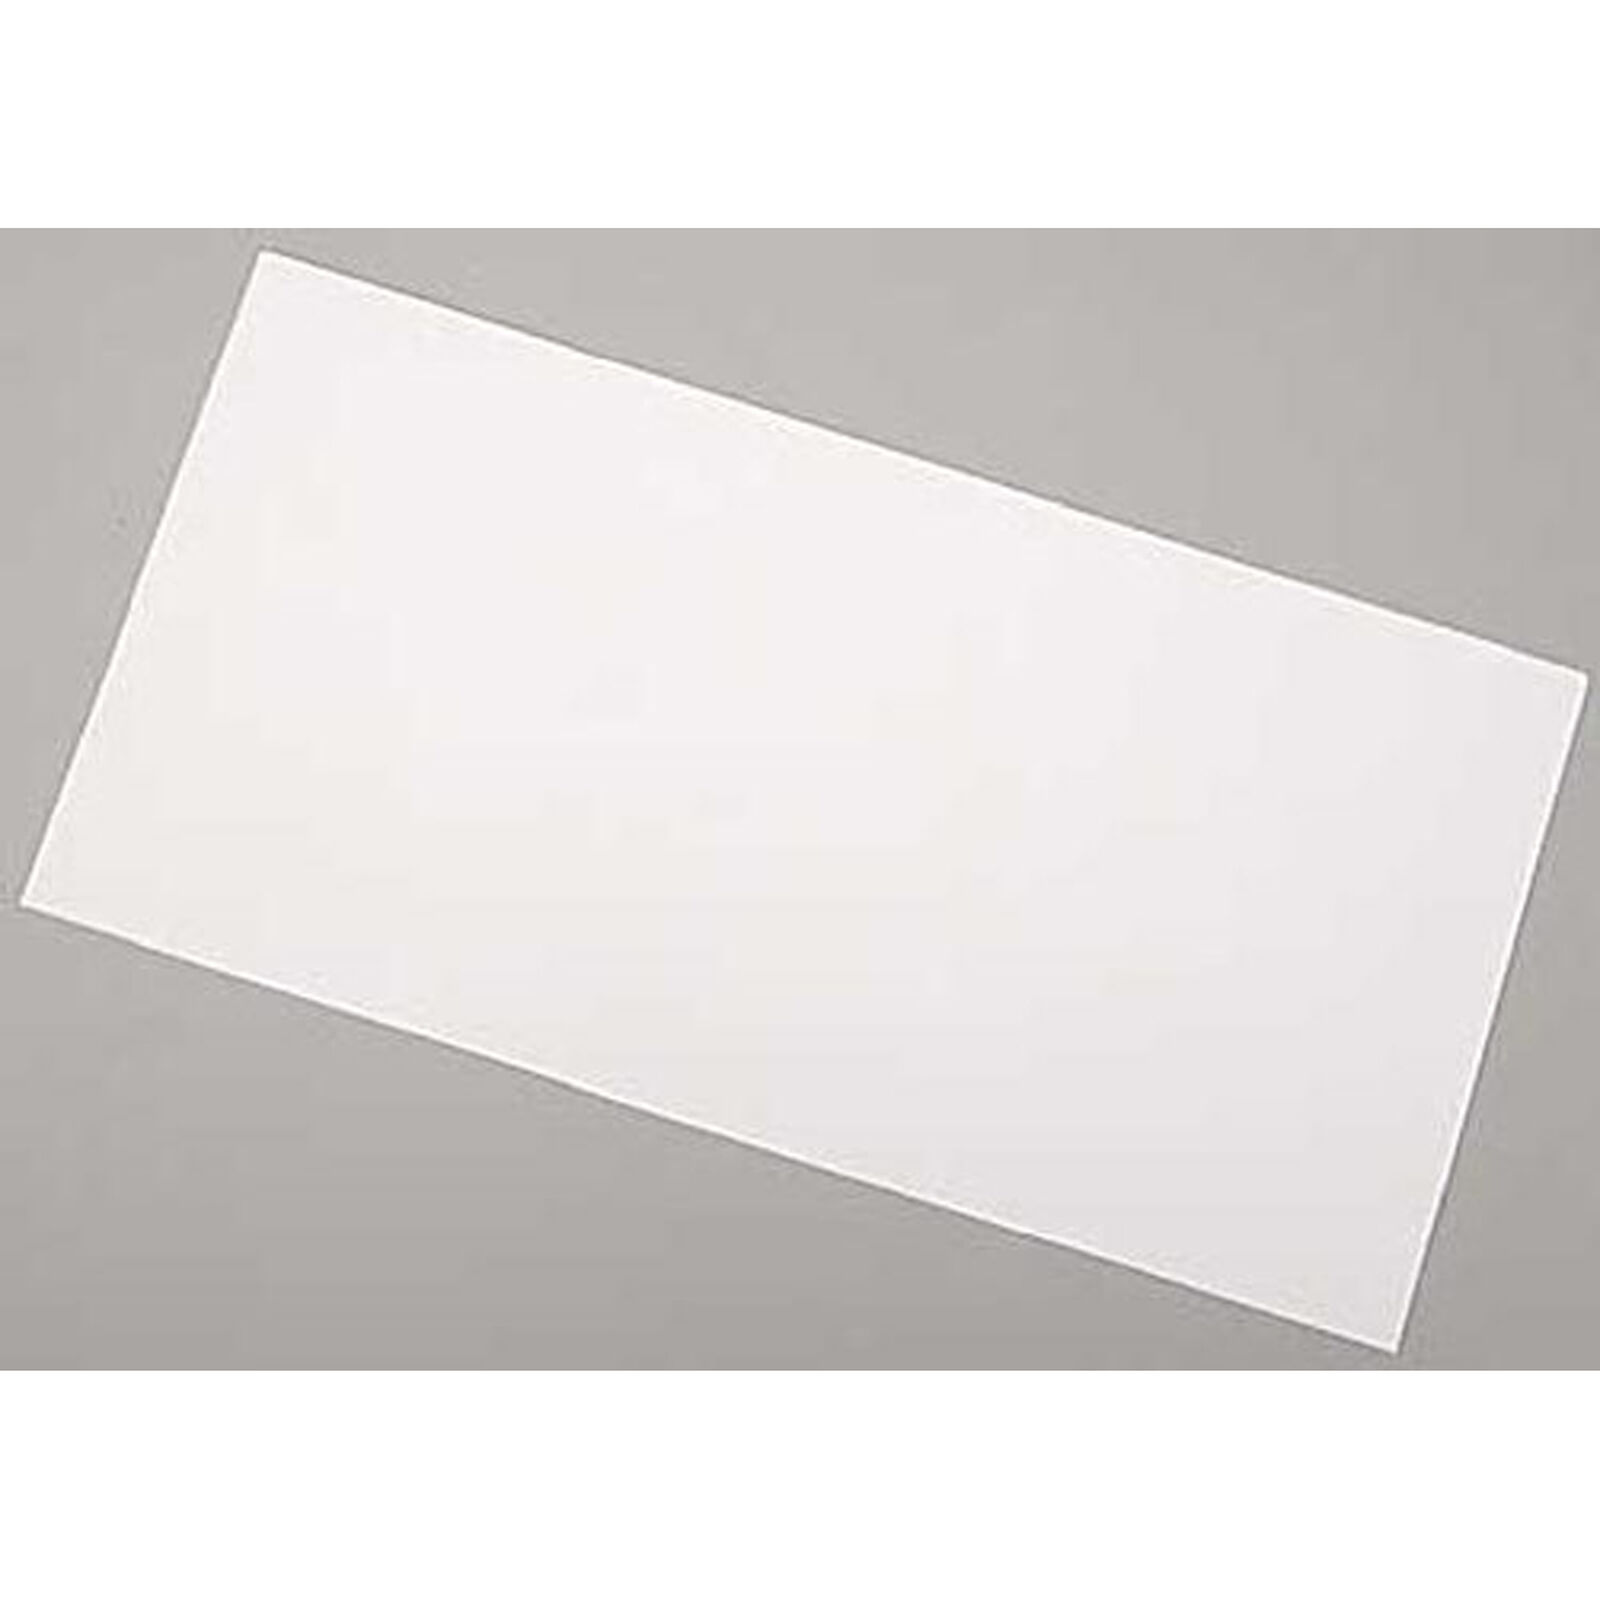 White Sheet .005 x 6 x 12 (3)